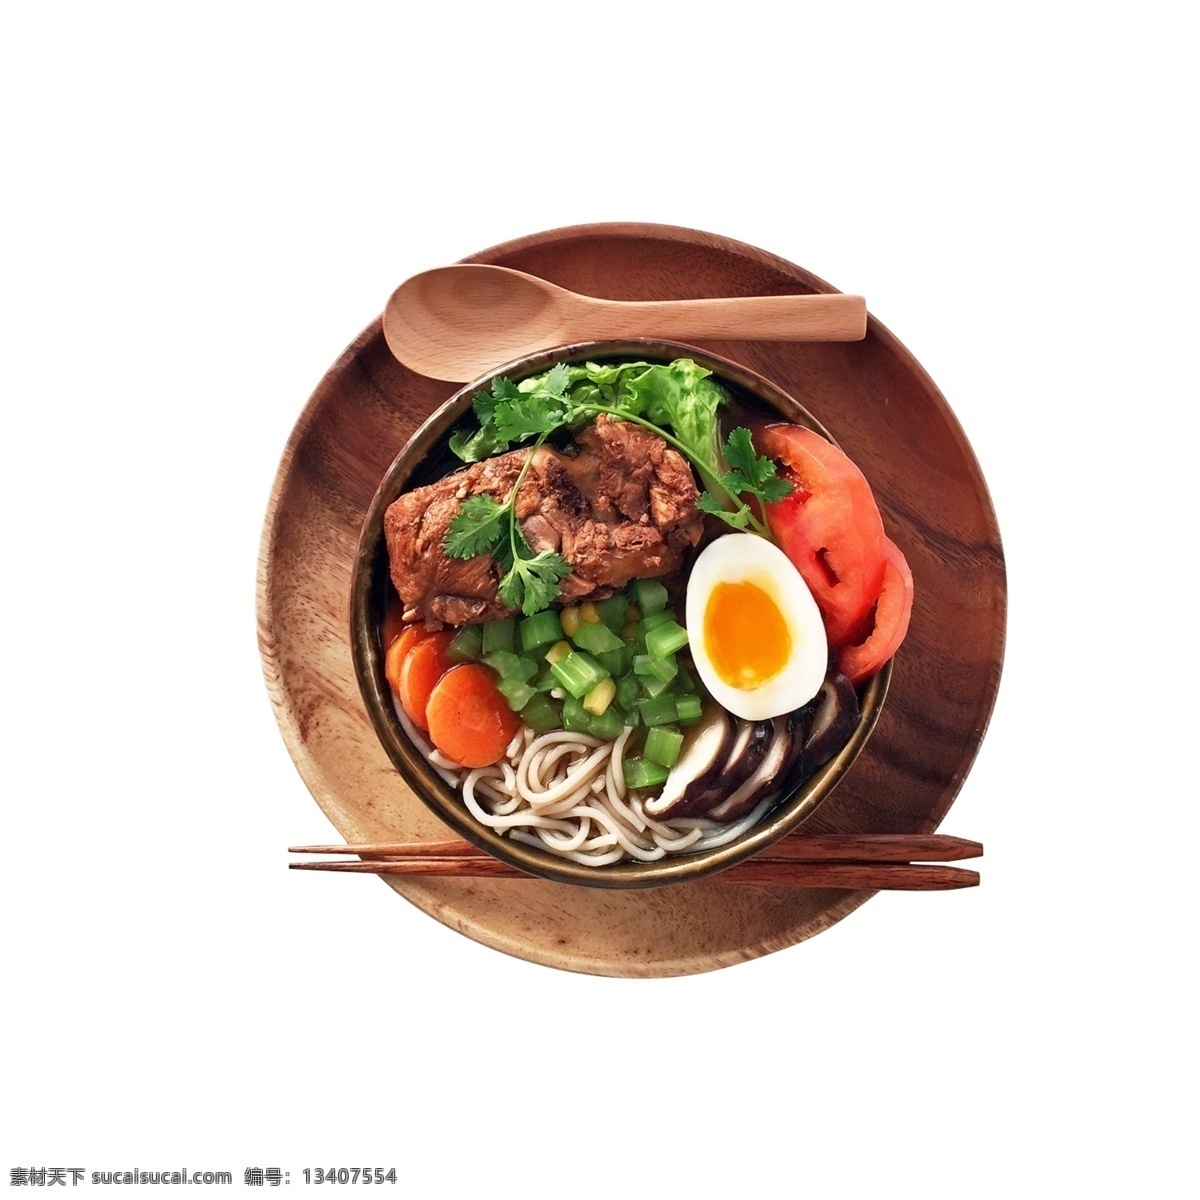 盘 美味 盖浇饭 鸡蛋 肉食 蔬菜水果 盘子 勺子 面条 筷子 餐饮